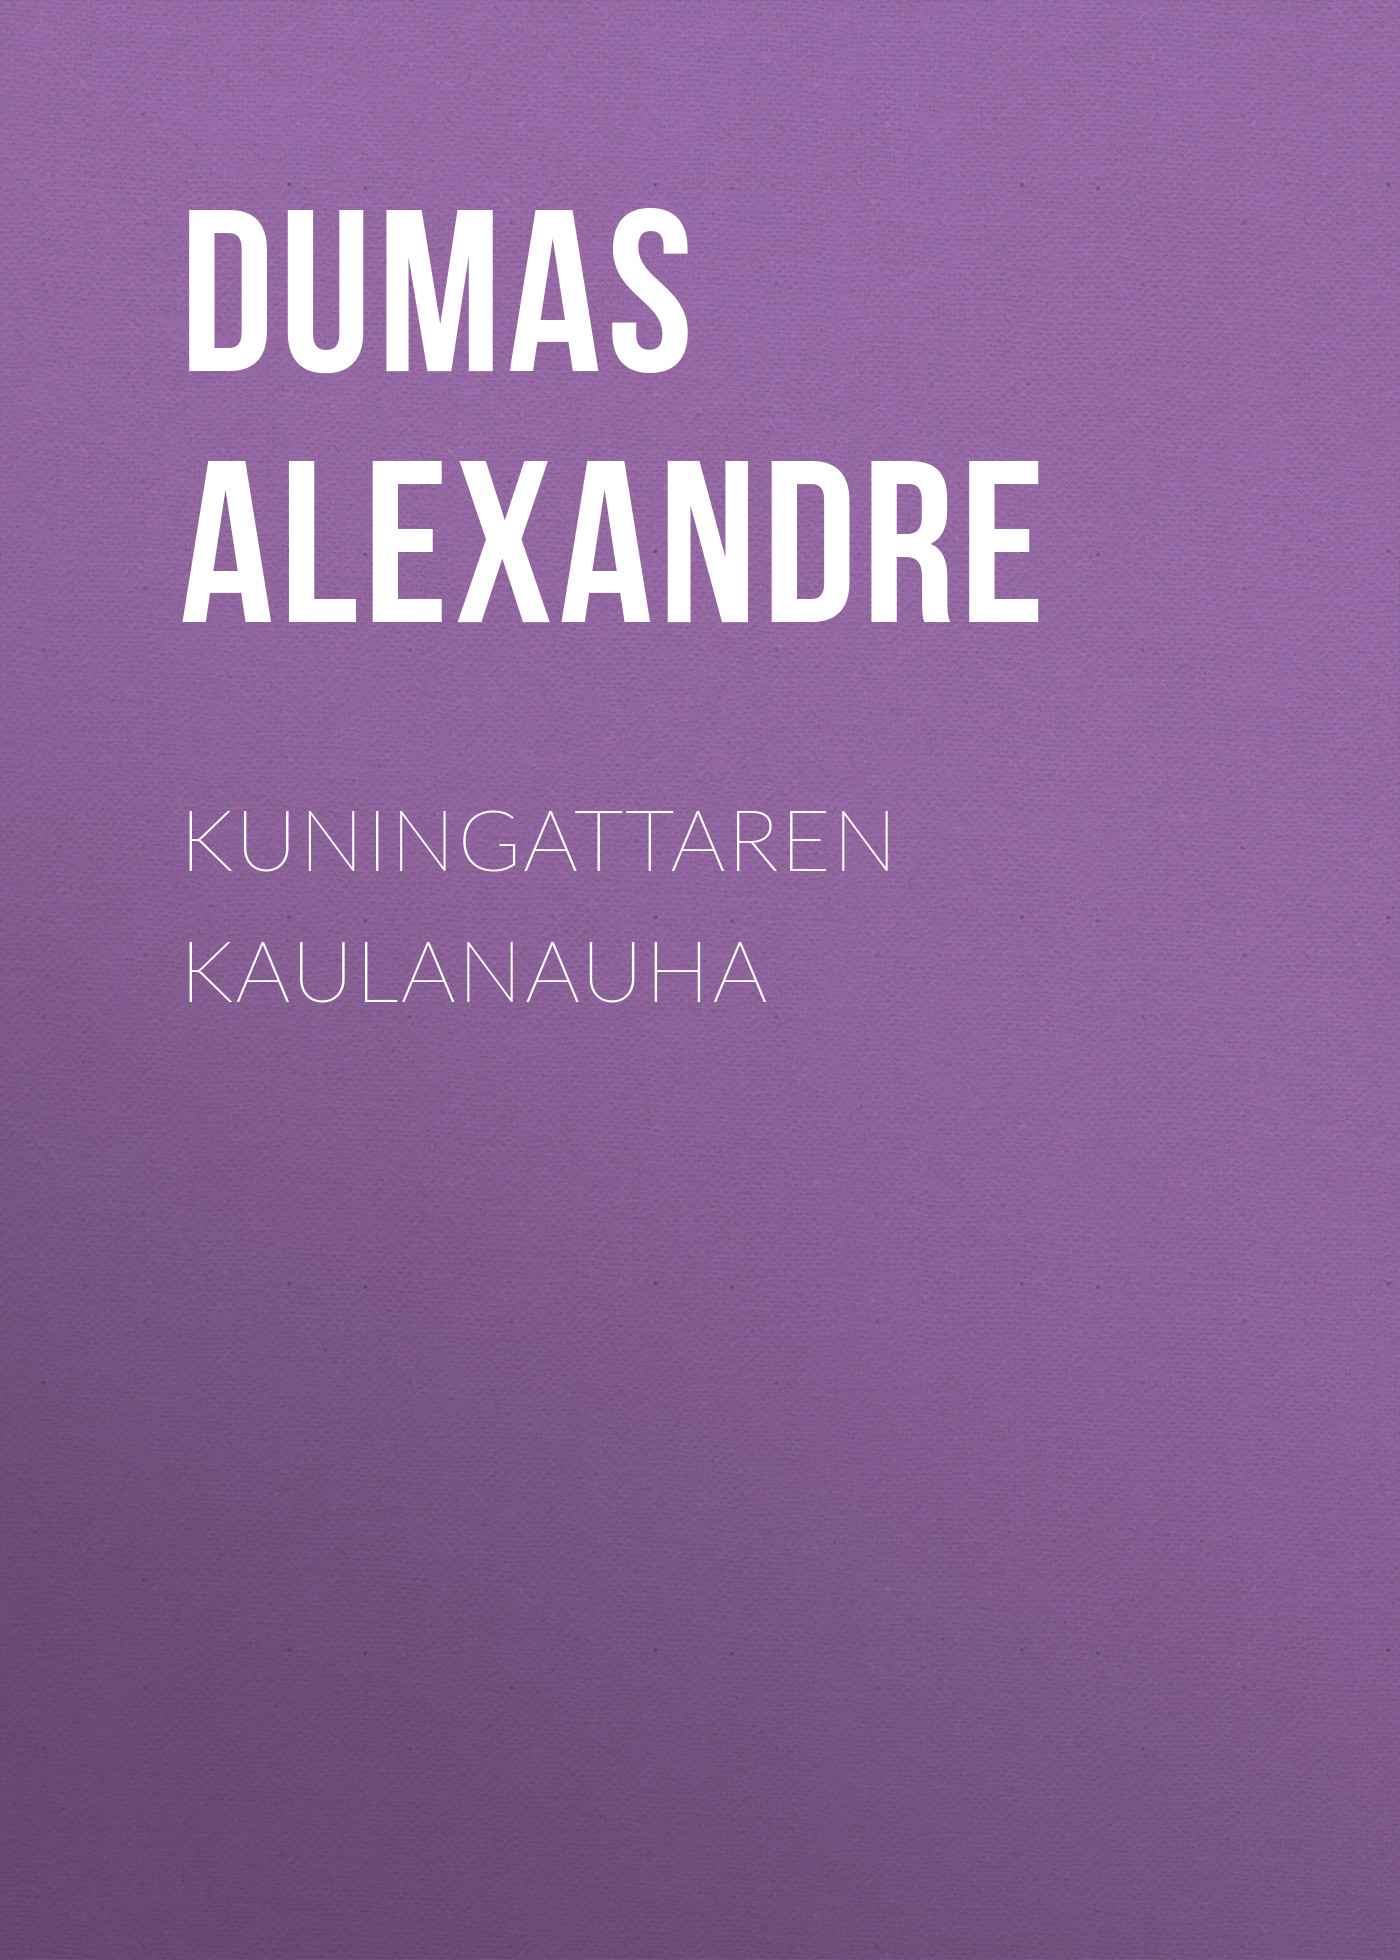 Книга Kuningattaren kaulanauha из серии , созданная Alexandre Dumas, может относится к жанру Литература 19 века, Зарубежная старинная литература, Зарубежная классика. Стоимость электронной книги Kuningattaren kaulanauha с идентификатором 25203423 составляет 0 руб.